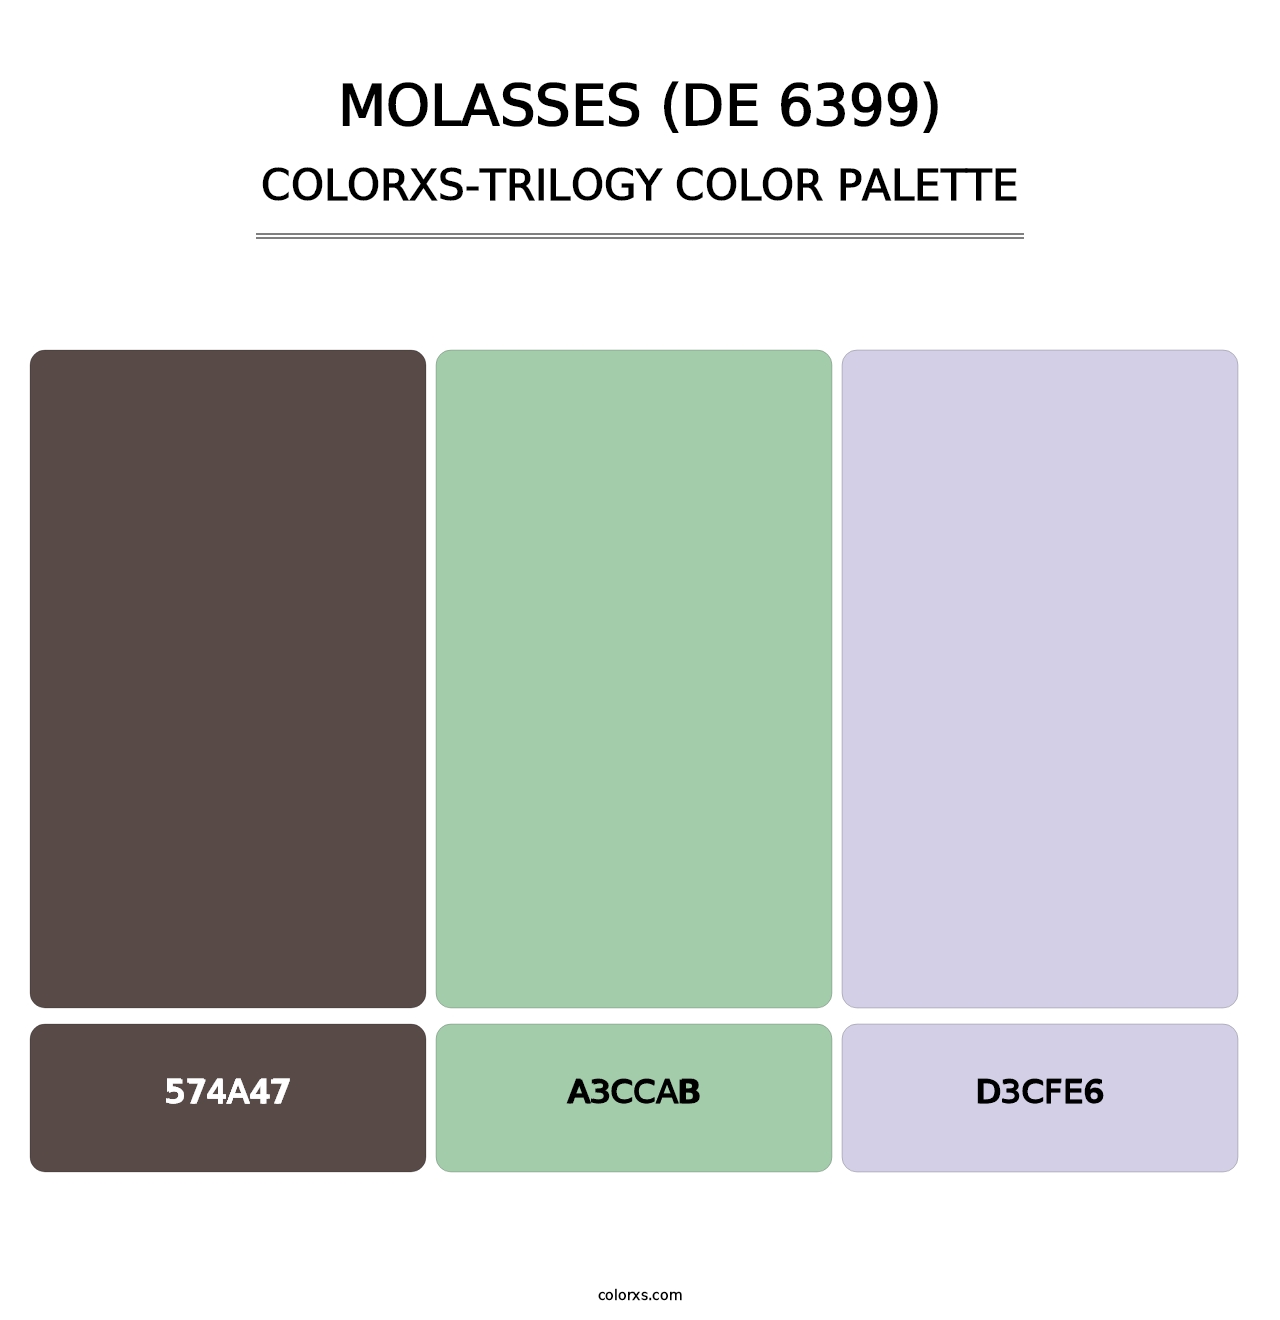 Molasses (DE 6399) - Colorxs Trilogy Palette